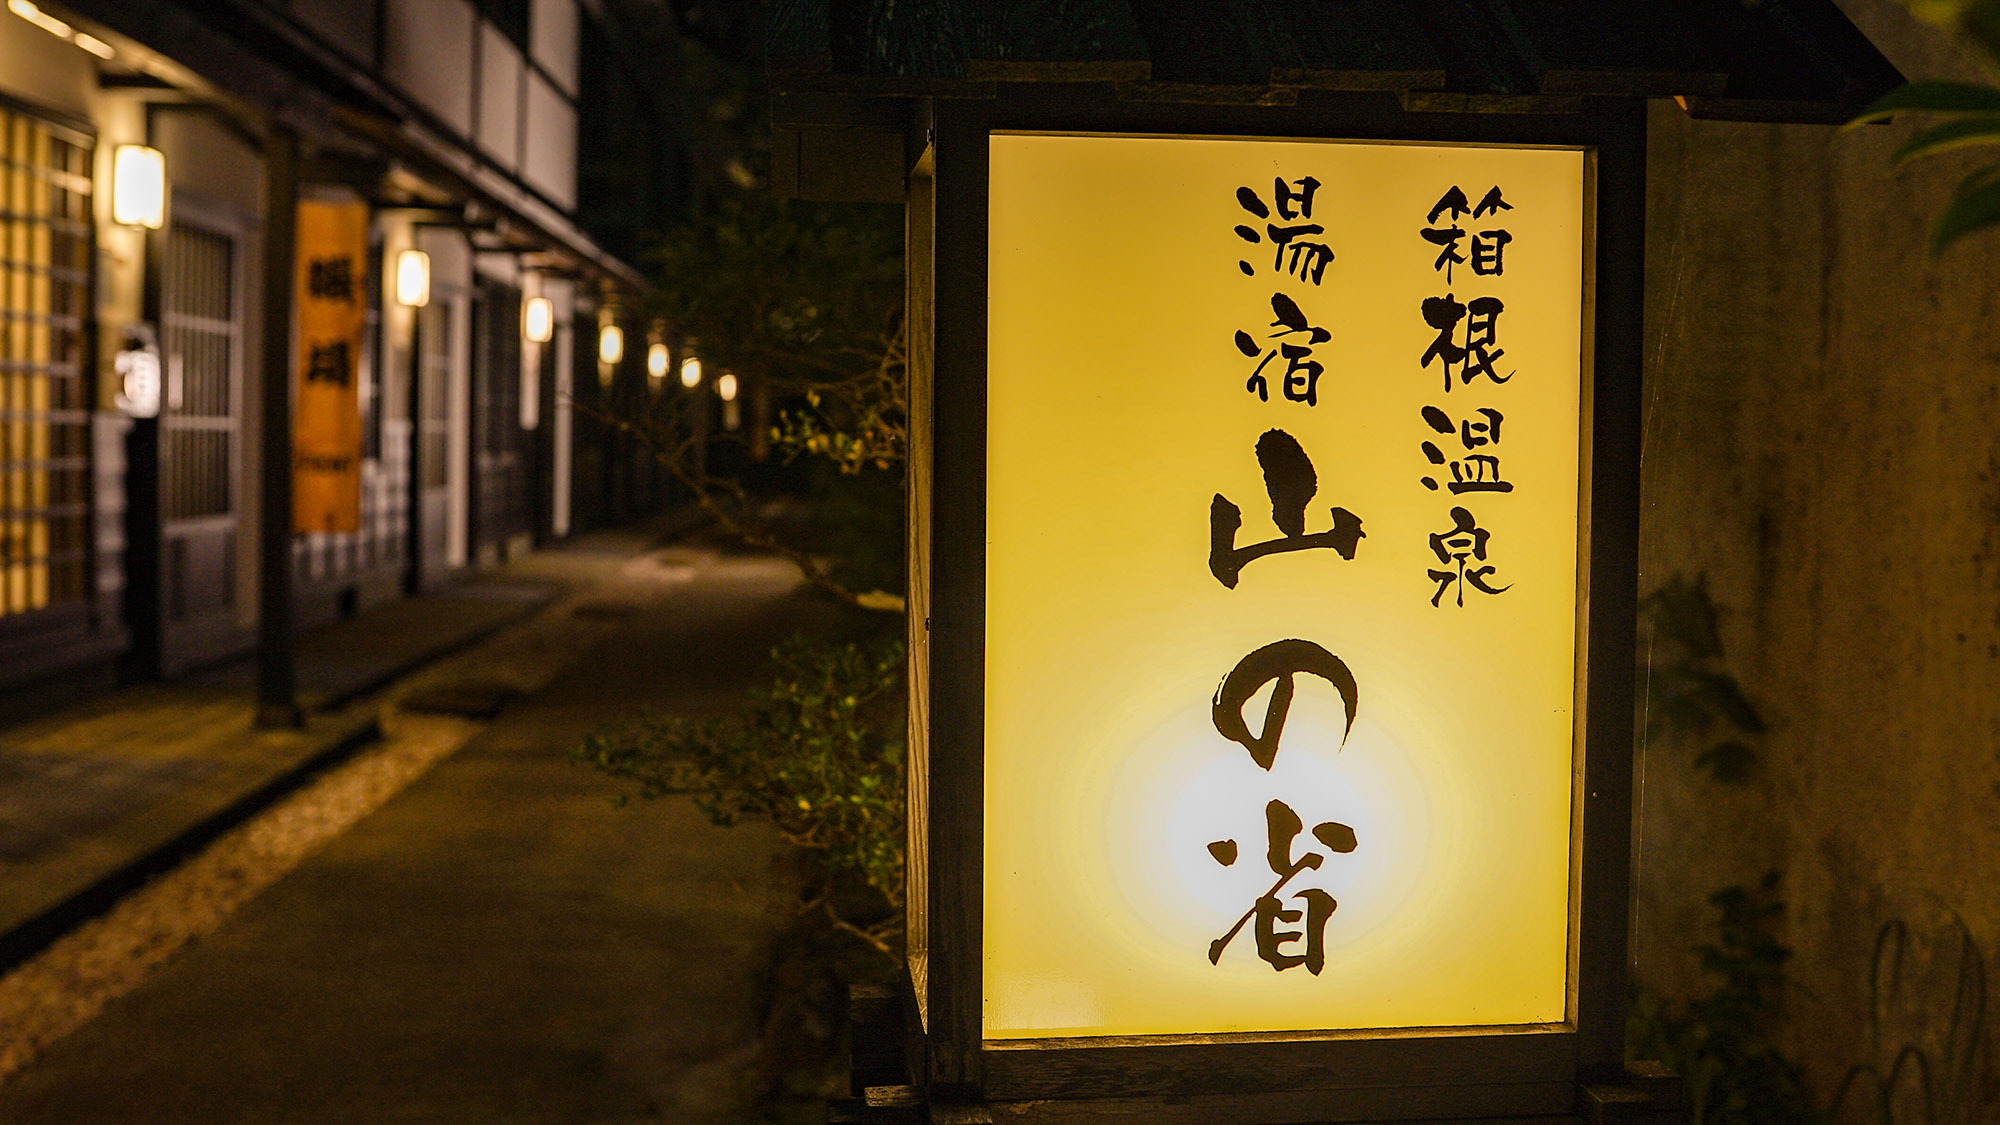 ・気軽にご利用いただける箱根温泉の宿です